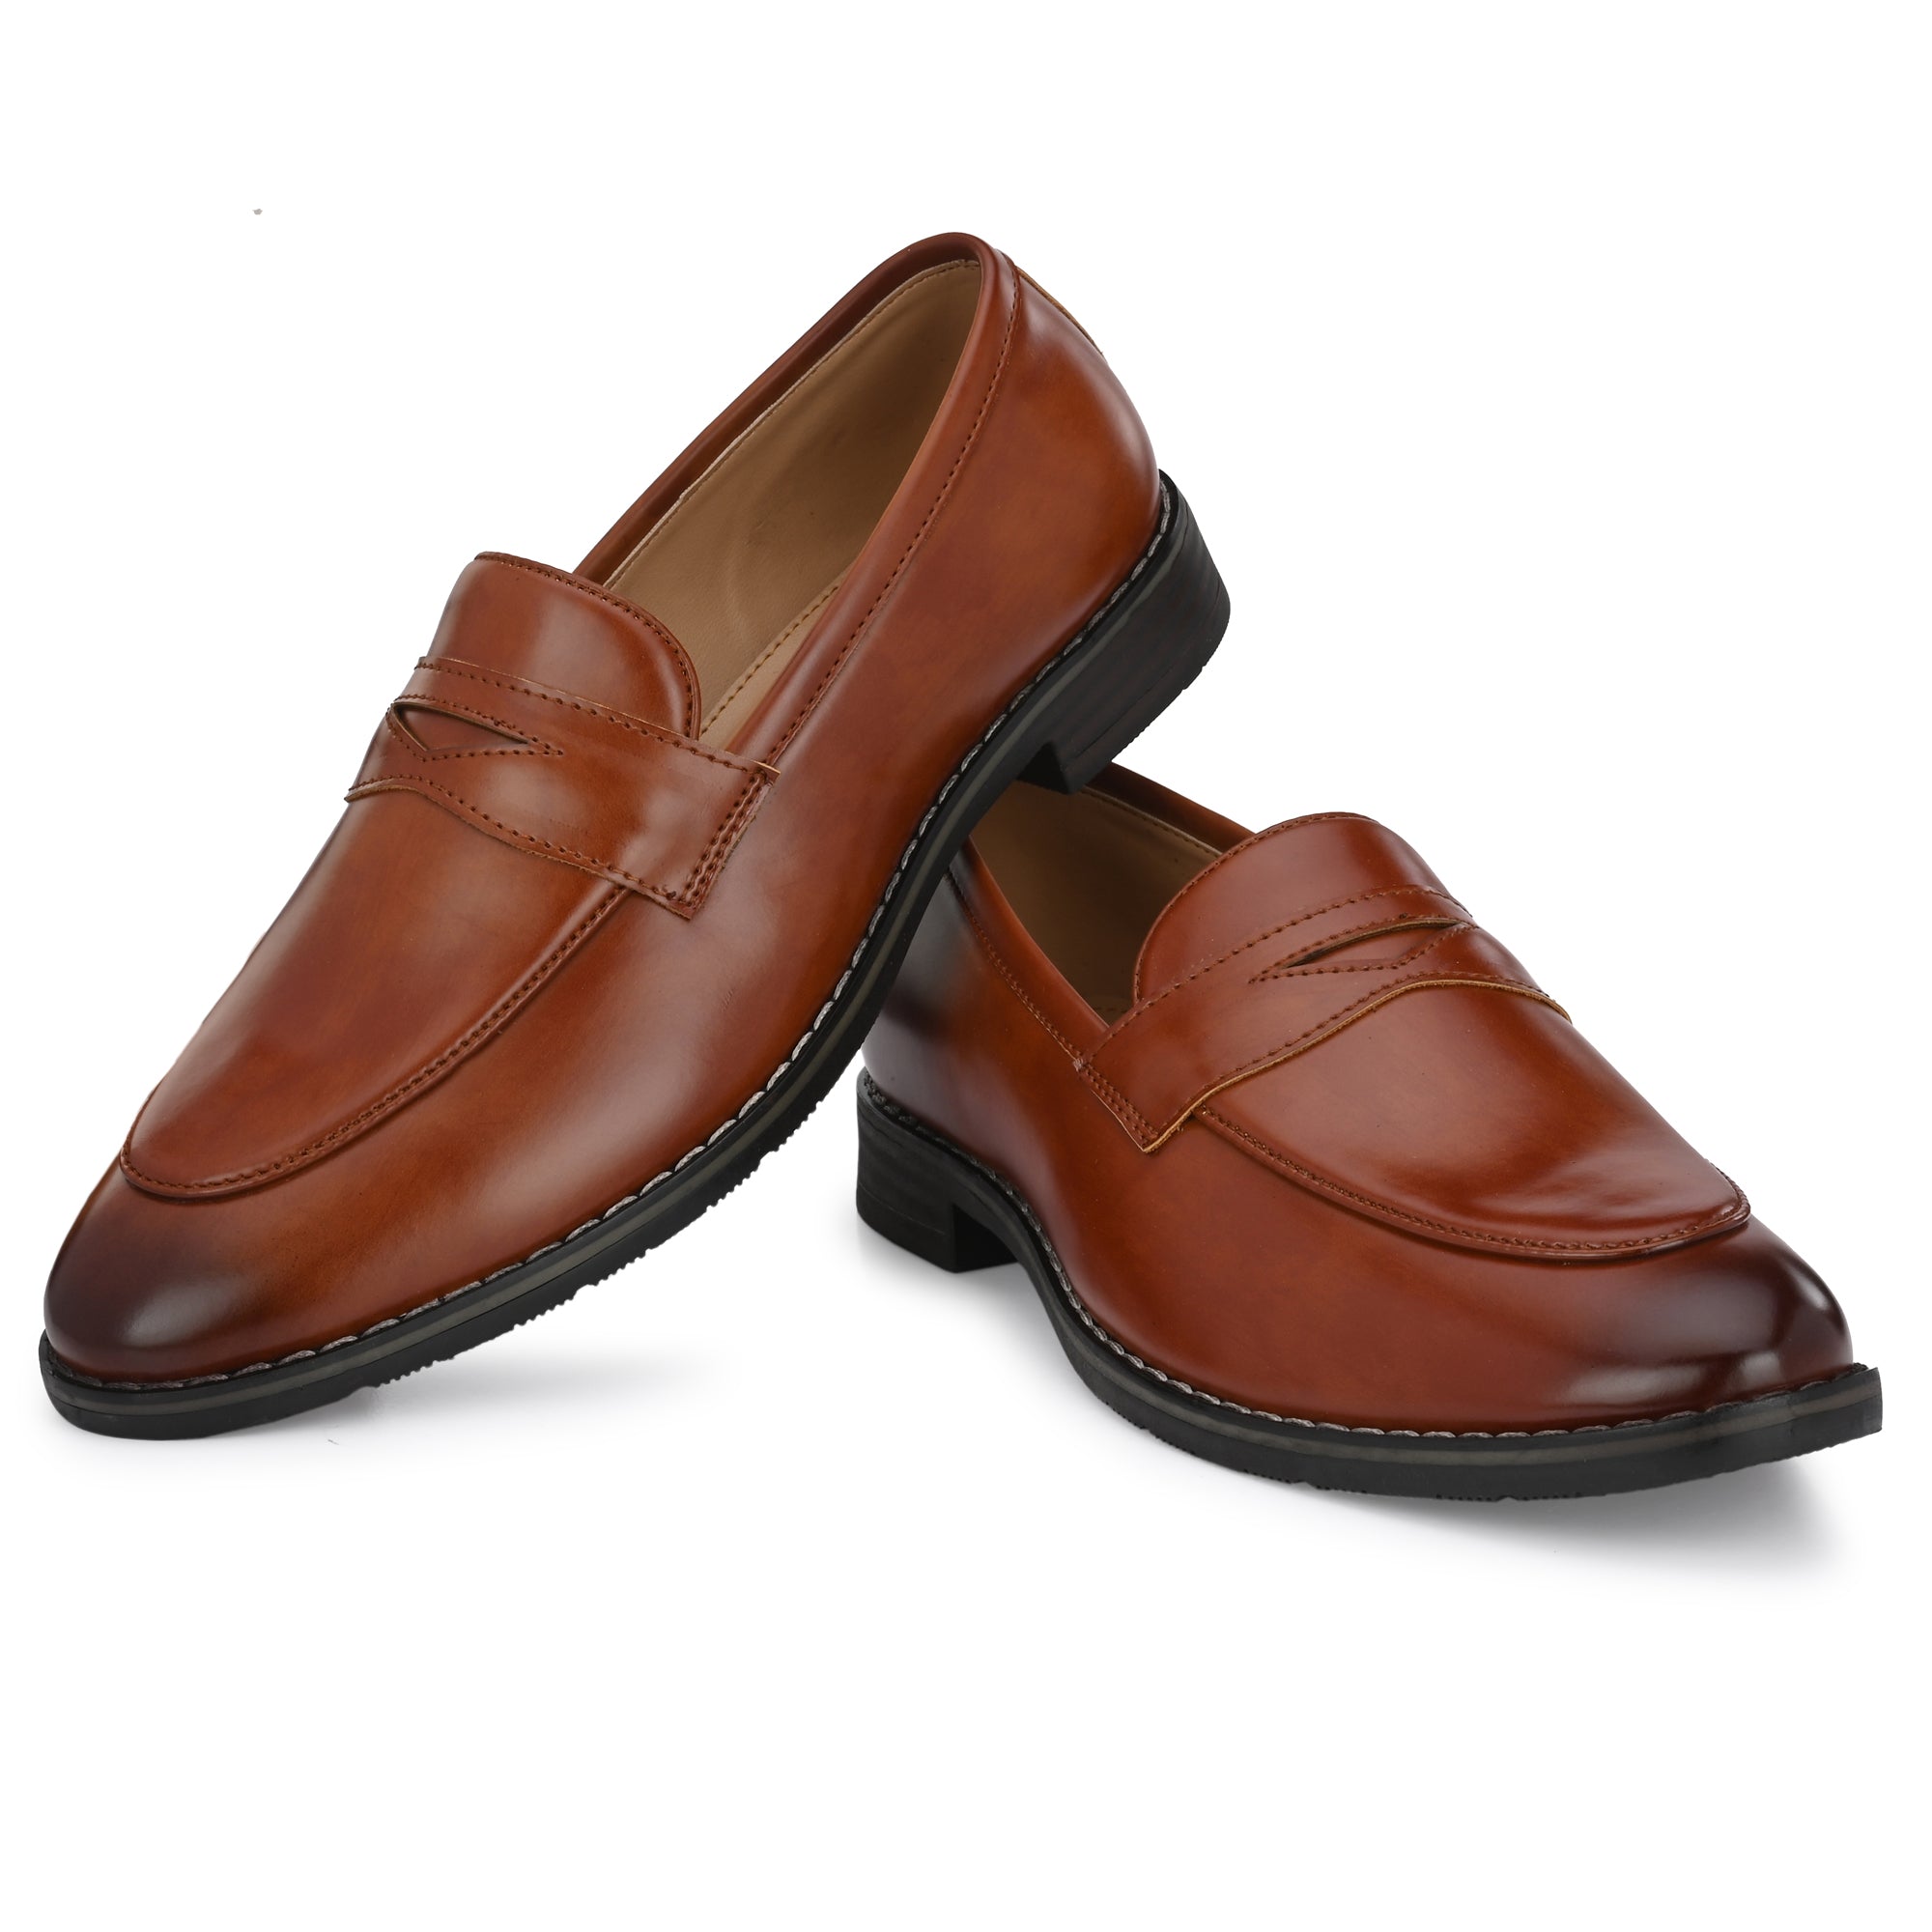 tan-loafers-attitudist-shoes-for-men-sp8c